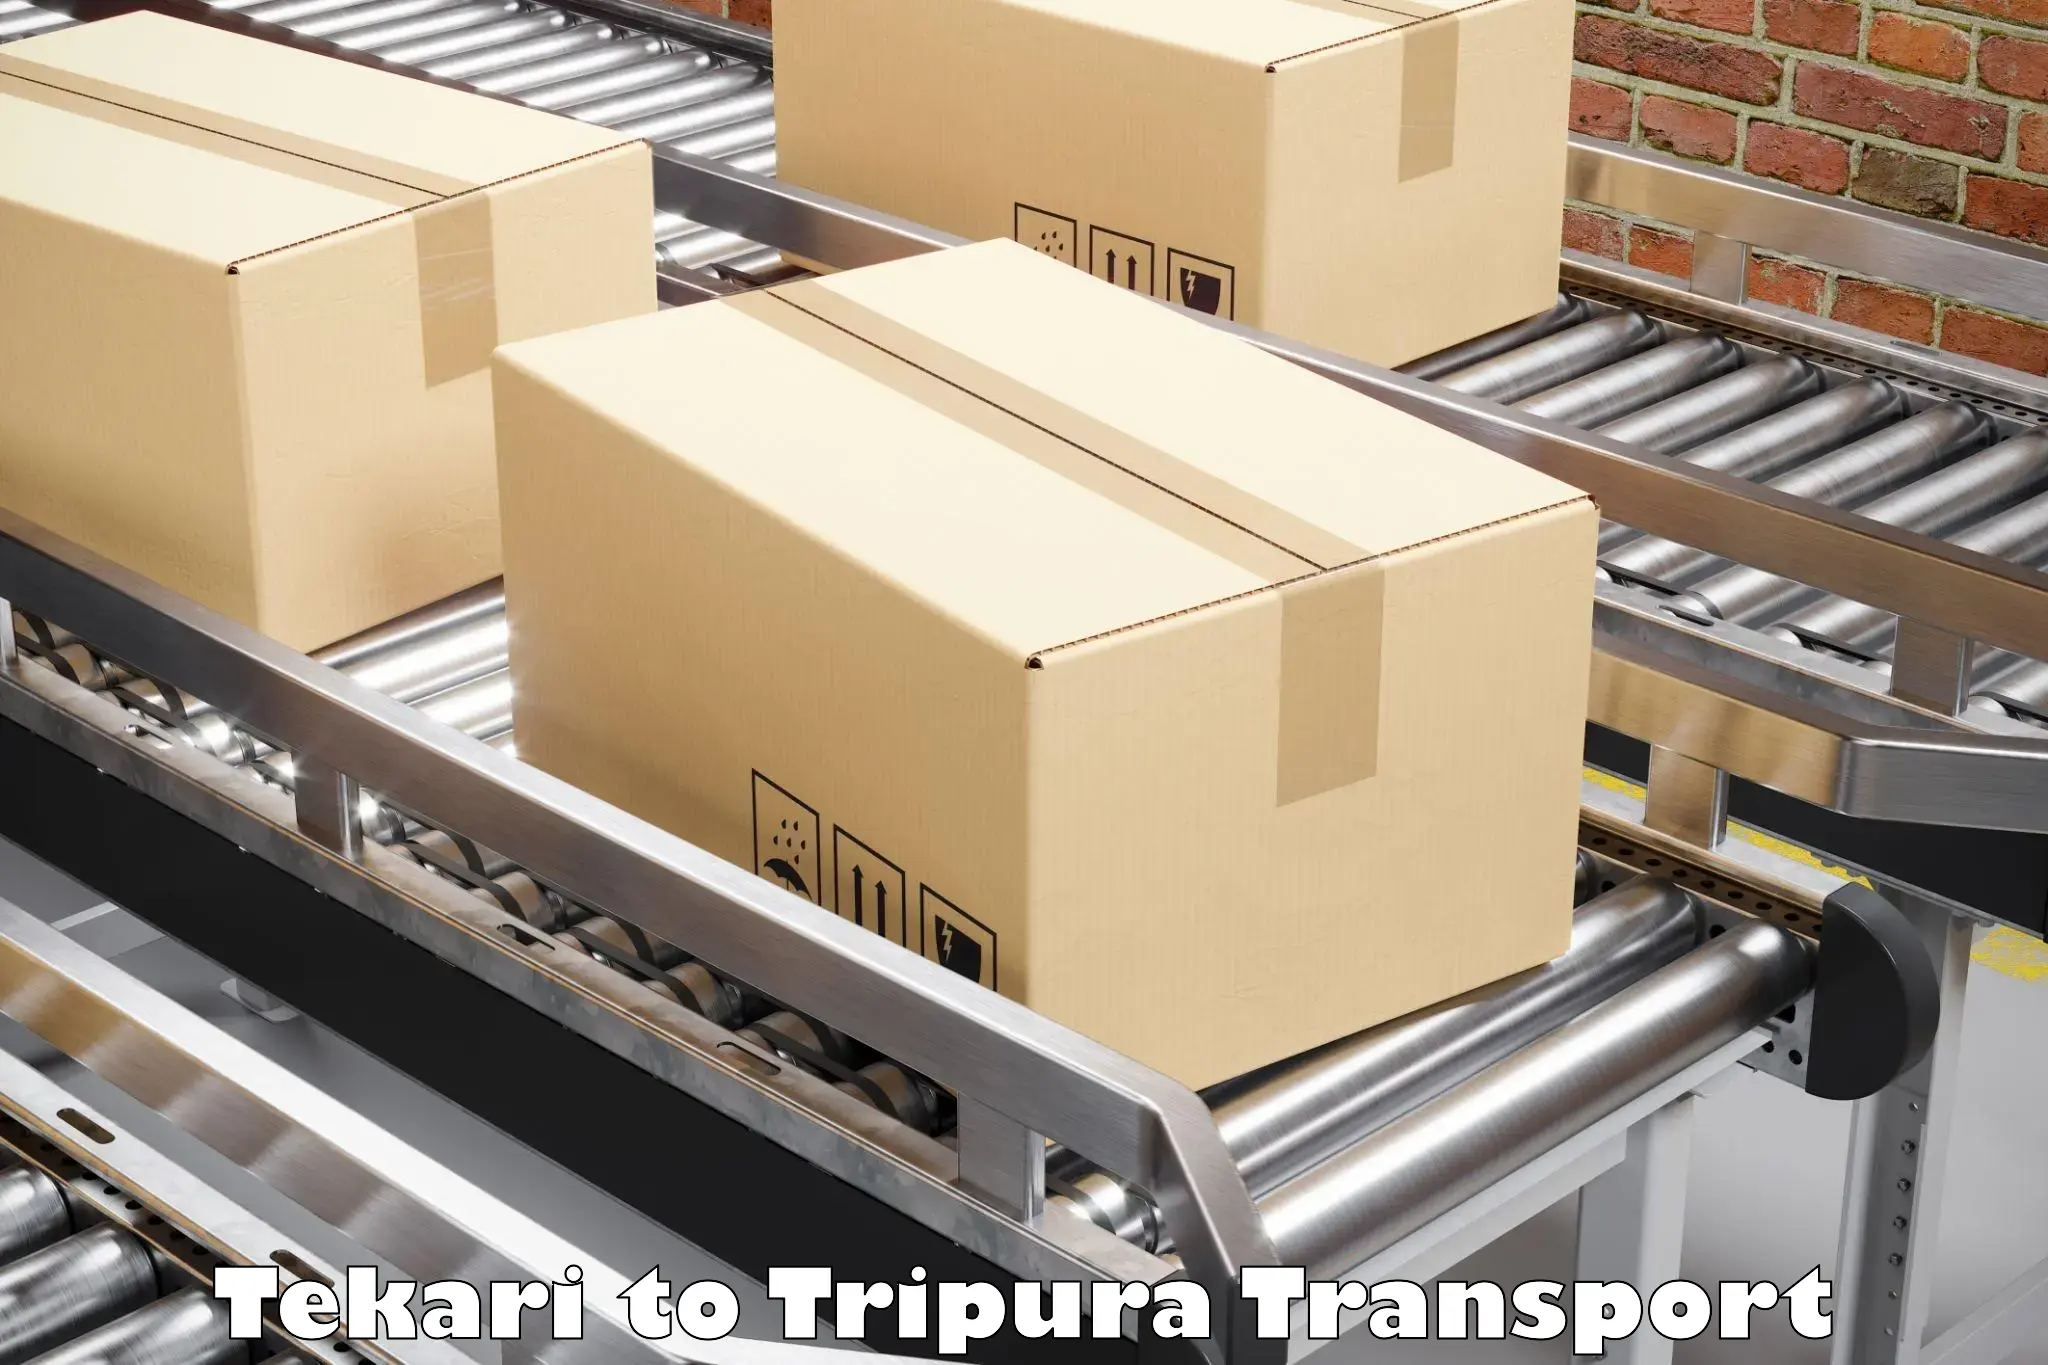 Online transport booking Tekari to Udaipur Tripura